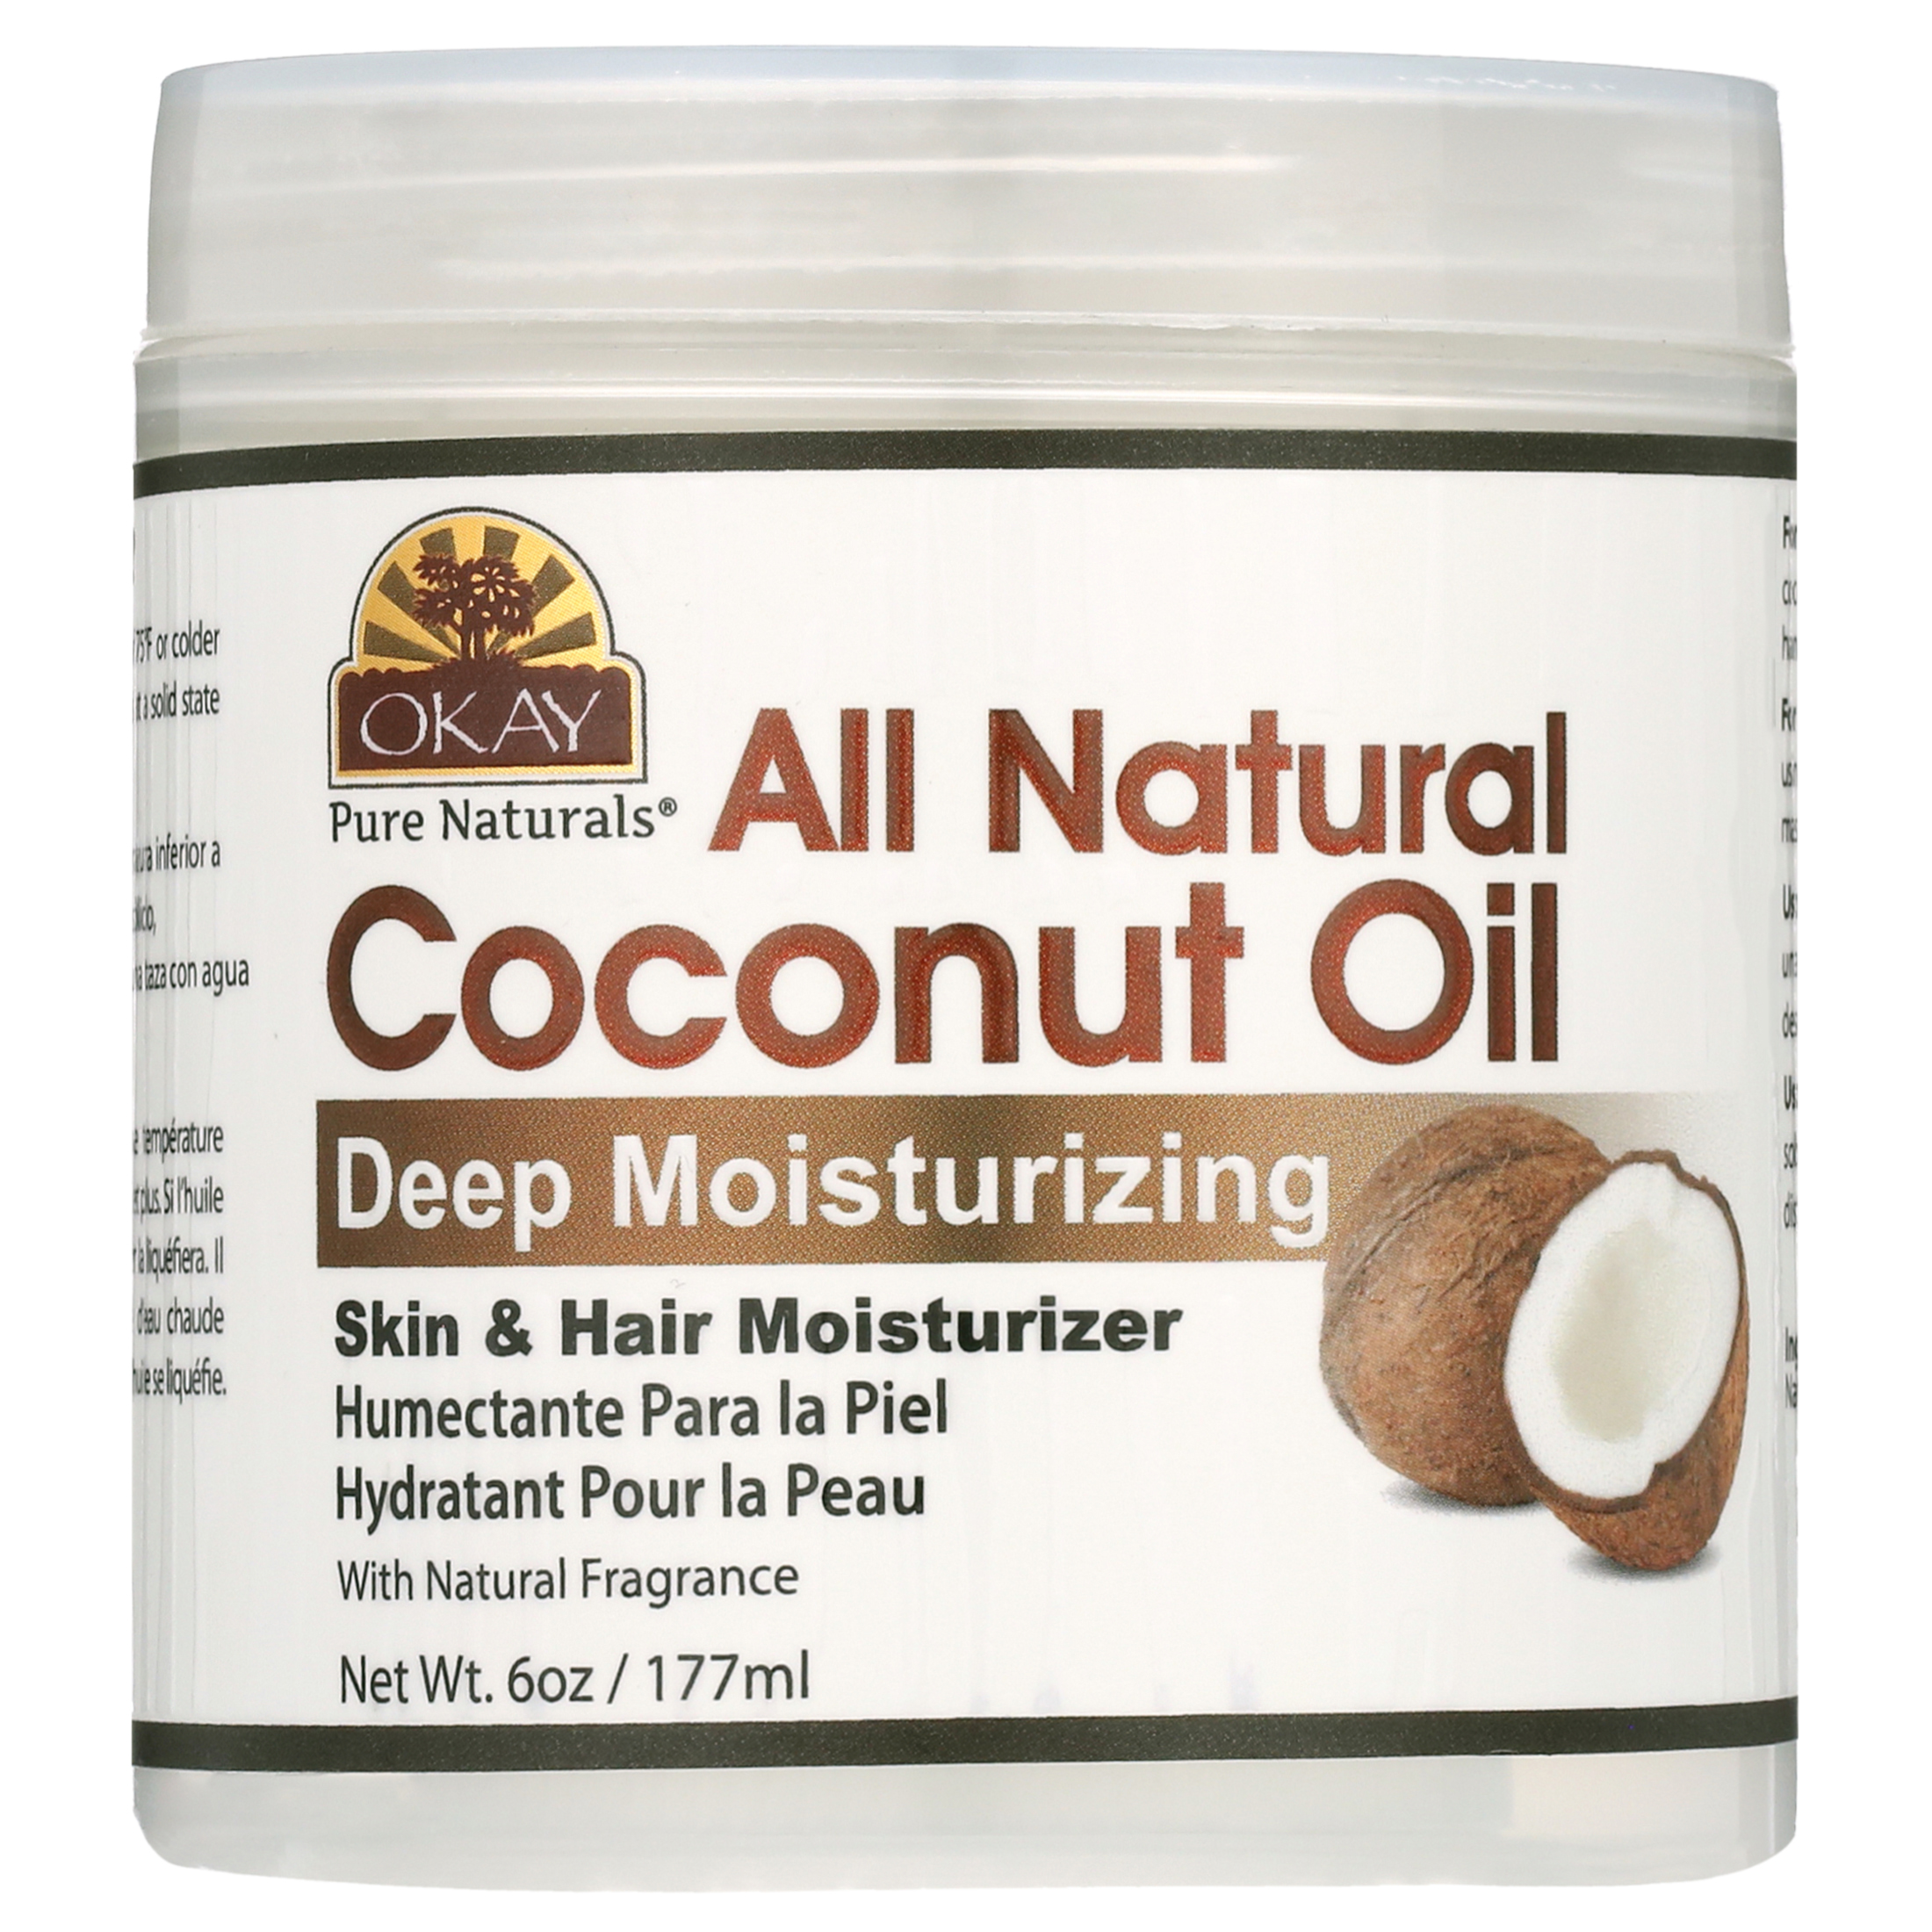 Okay 100% Pure Coconut Oil, Deep Moisturizing - 6 oz jar